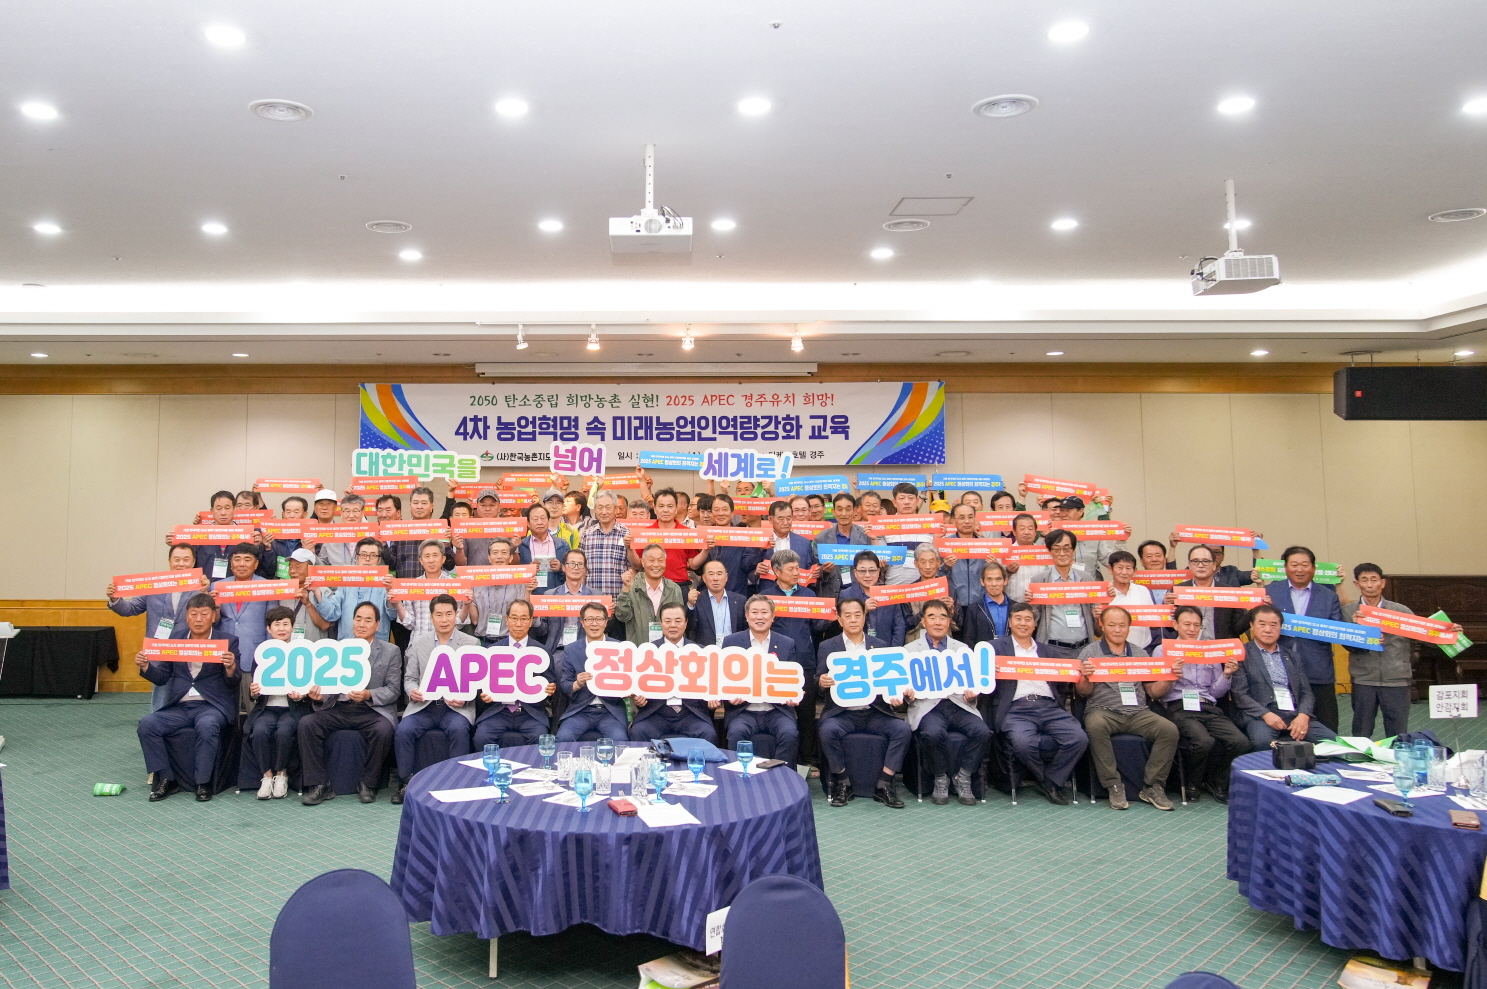 경주시 농촌지도자회가 지난 21일 더케이호텔에서 열린 교육 행사에 앞서 ‘2050 탄소중립 희망 농촌 실현과 2025 APEC 경주 유치 희망’의 마음을 담은 퍼포먼스를 진행하고 있다.